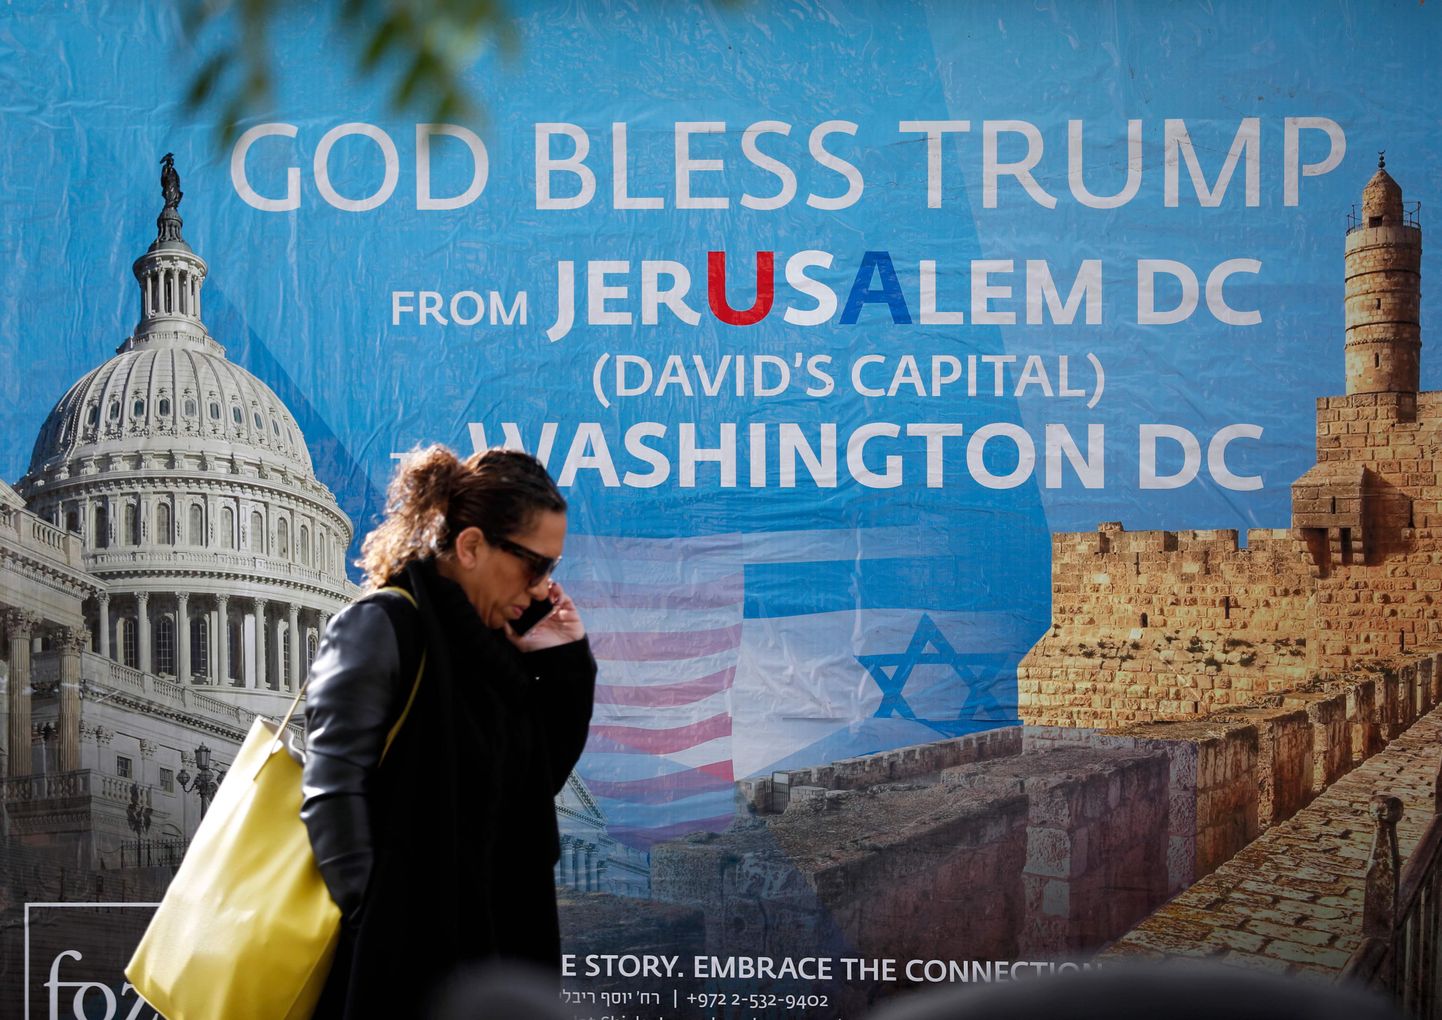 Naine möödub Iisraeli-meelse evangeelsete kristlaste rühmituse Friends of Zion (Siioni Sõbrad) poolt Jeruusalemma kesklinna kleebitud plakatist. Sellel seisev kiri tänab Donald Trumpi kuningas Taaveti pealinna tunnustamise eest Iisraeli pealinnana.